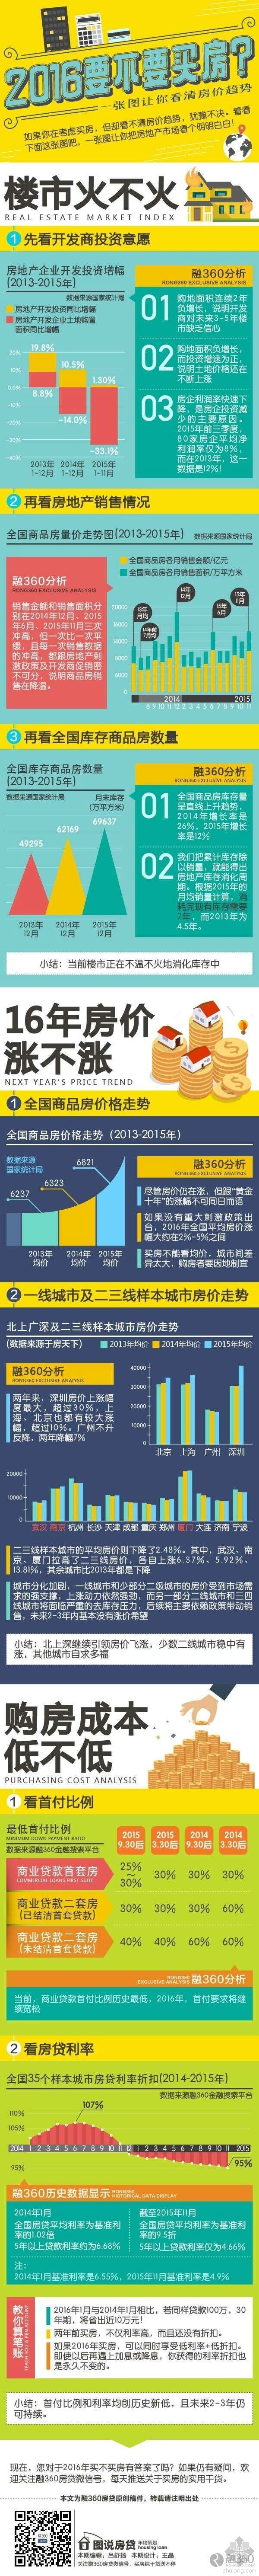 重庆2016年房价预测资料下载-2016要不要买房？一张图让你看清房价趋势